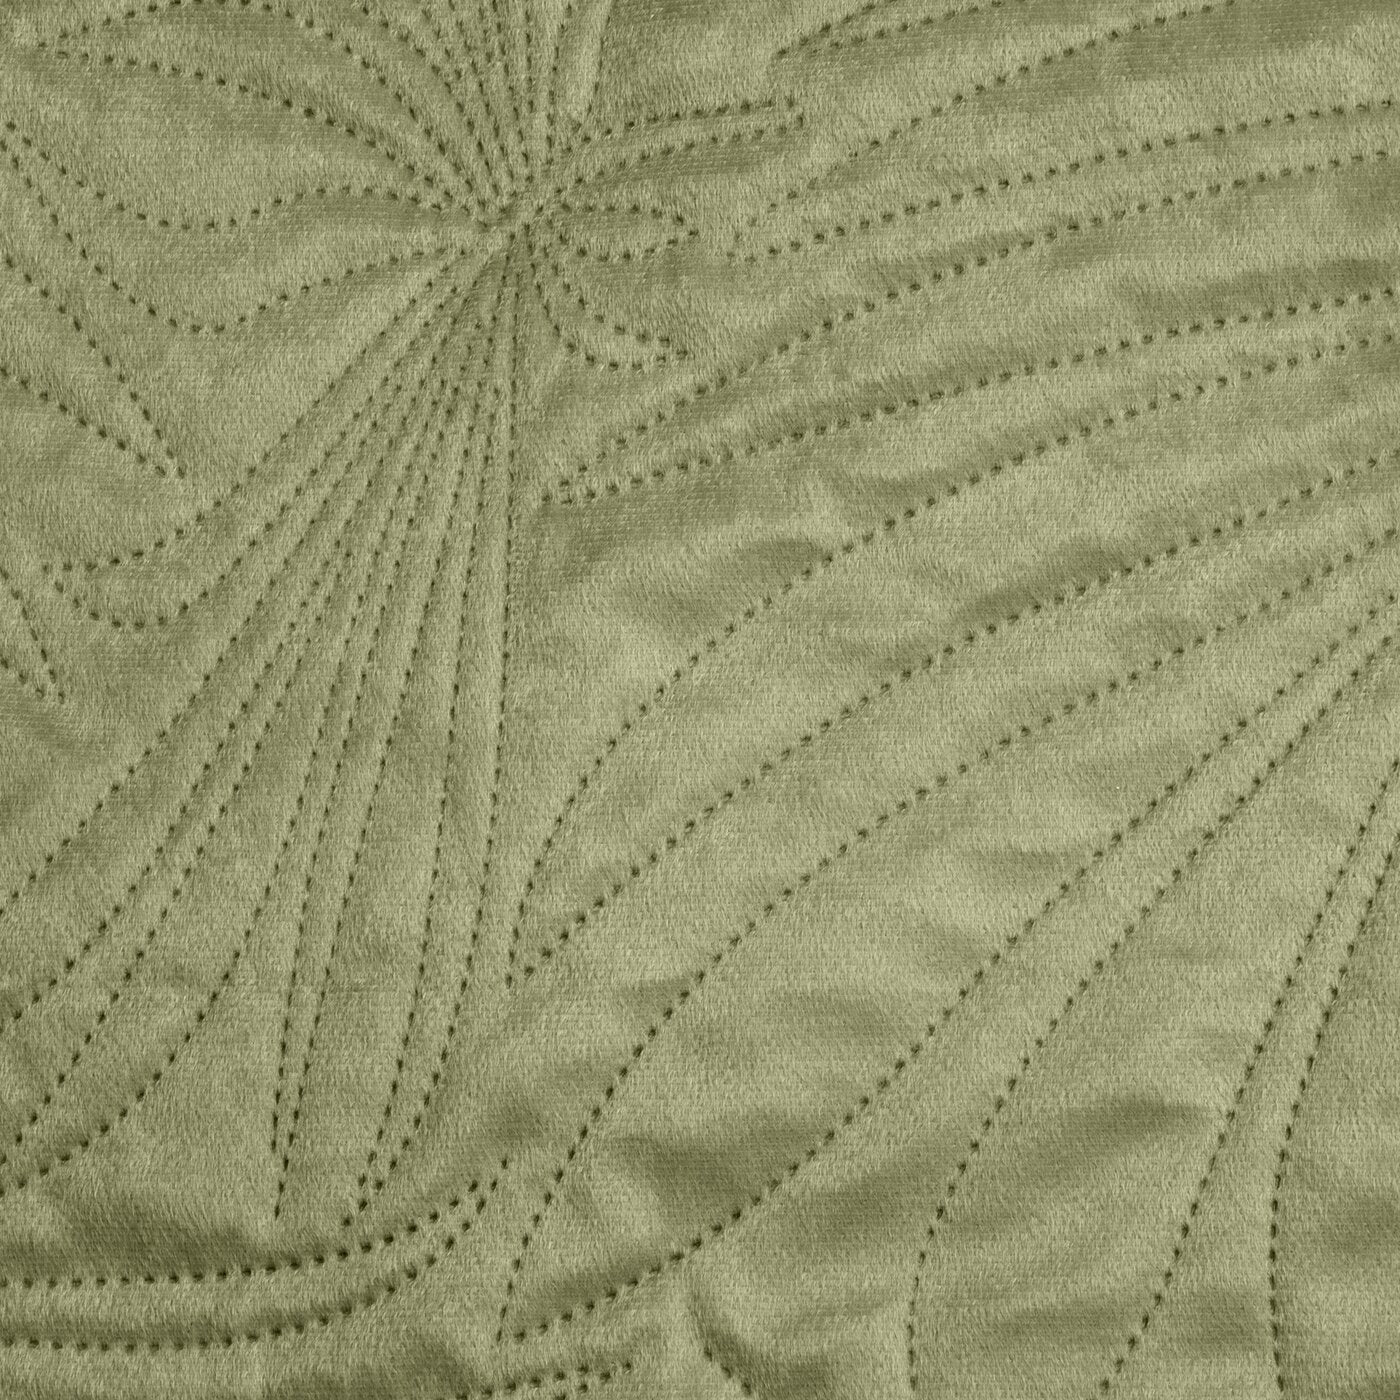 Cuvertură de Pat din catifea matlasată prin presare la cald cu model de frunze verde deschis LUIZ Perdele de Poveste